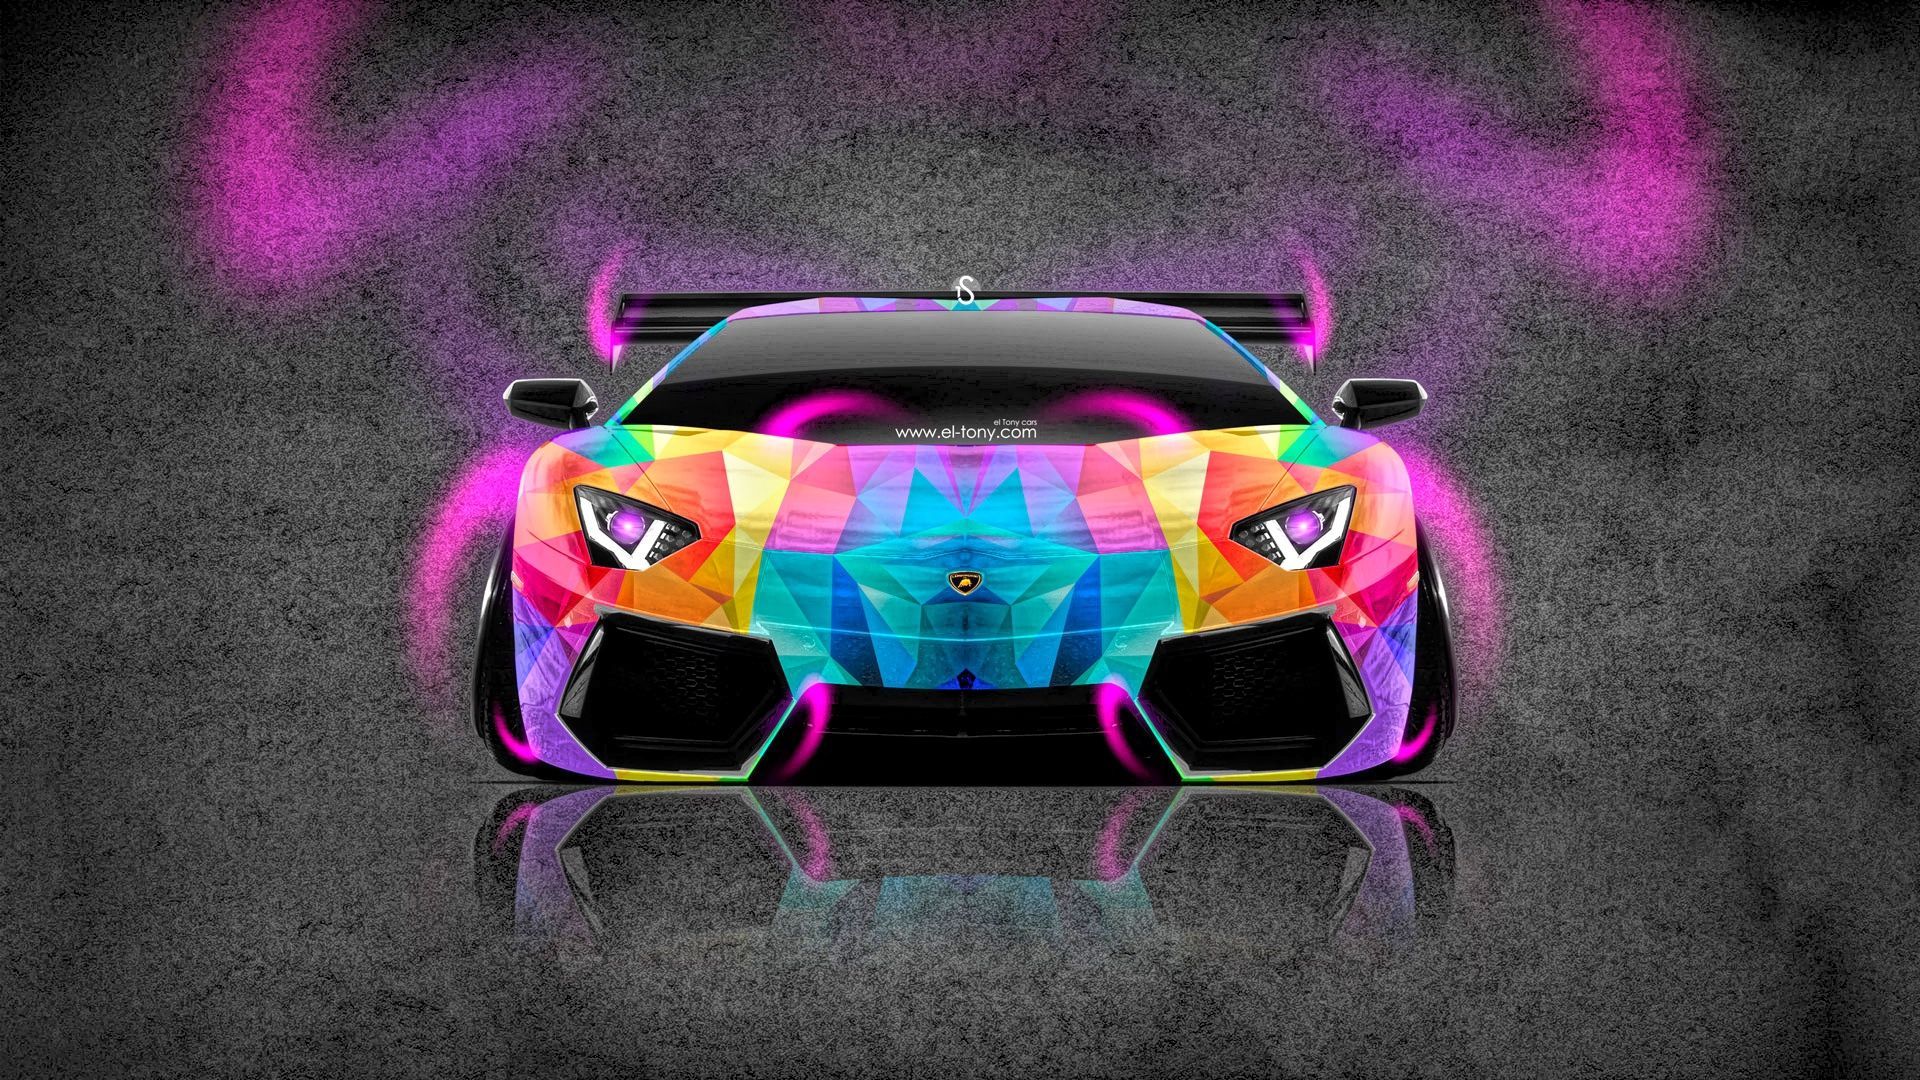 Galaxy Lamborghini: Những hình ảnh về chiếc siêu xe Lamborghini dưới ánh sao đêm sẽ khiến bạn thật sự phải ngất ngây. Được trang bị động cơ V10, Galaxy Lamborghini không chỉ thu hút vì vẻ đẹp mà còn vì hiệu suất tuyệt vời của nó.